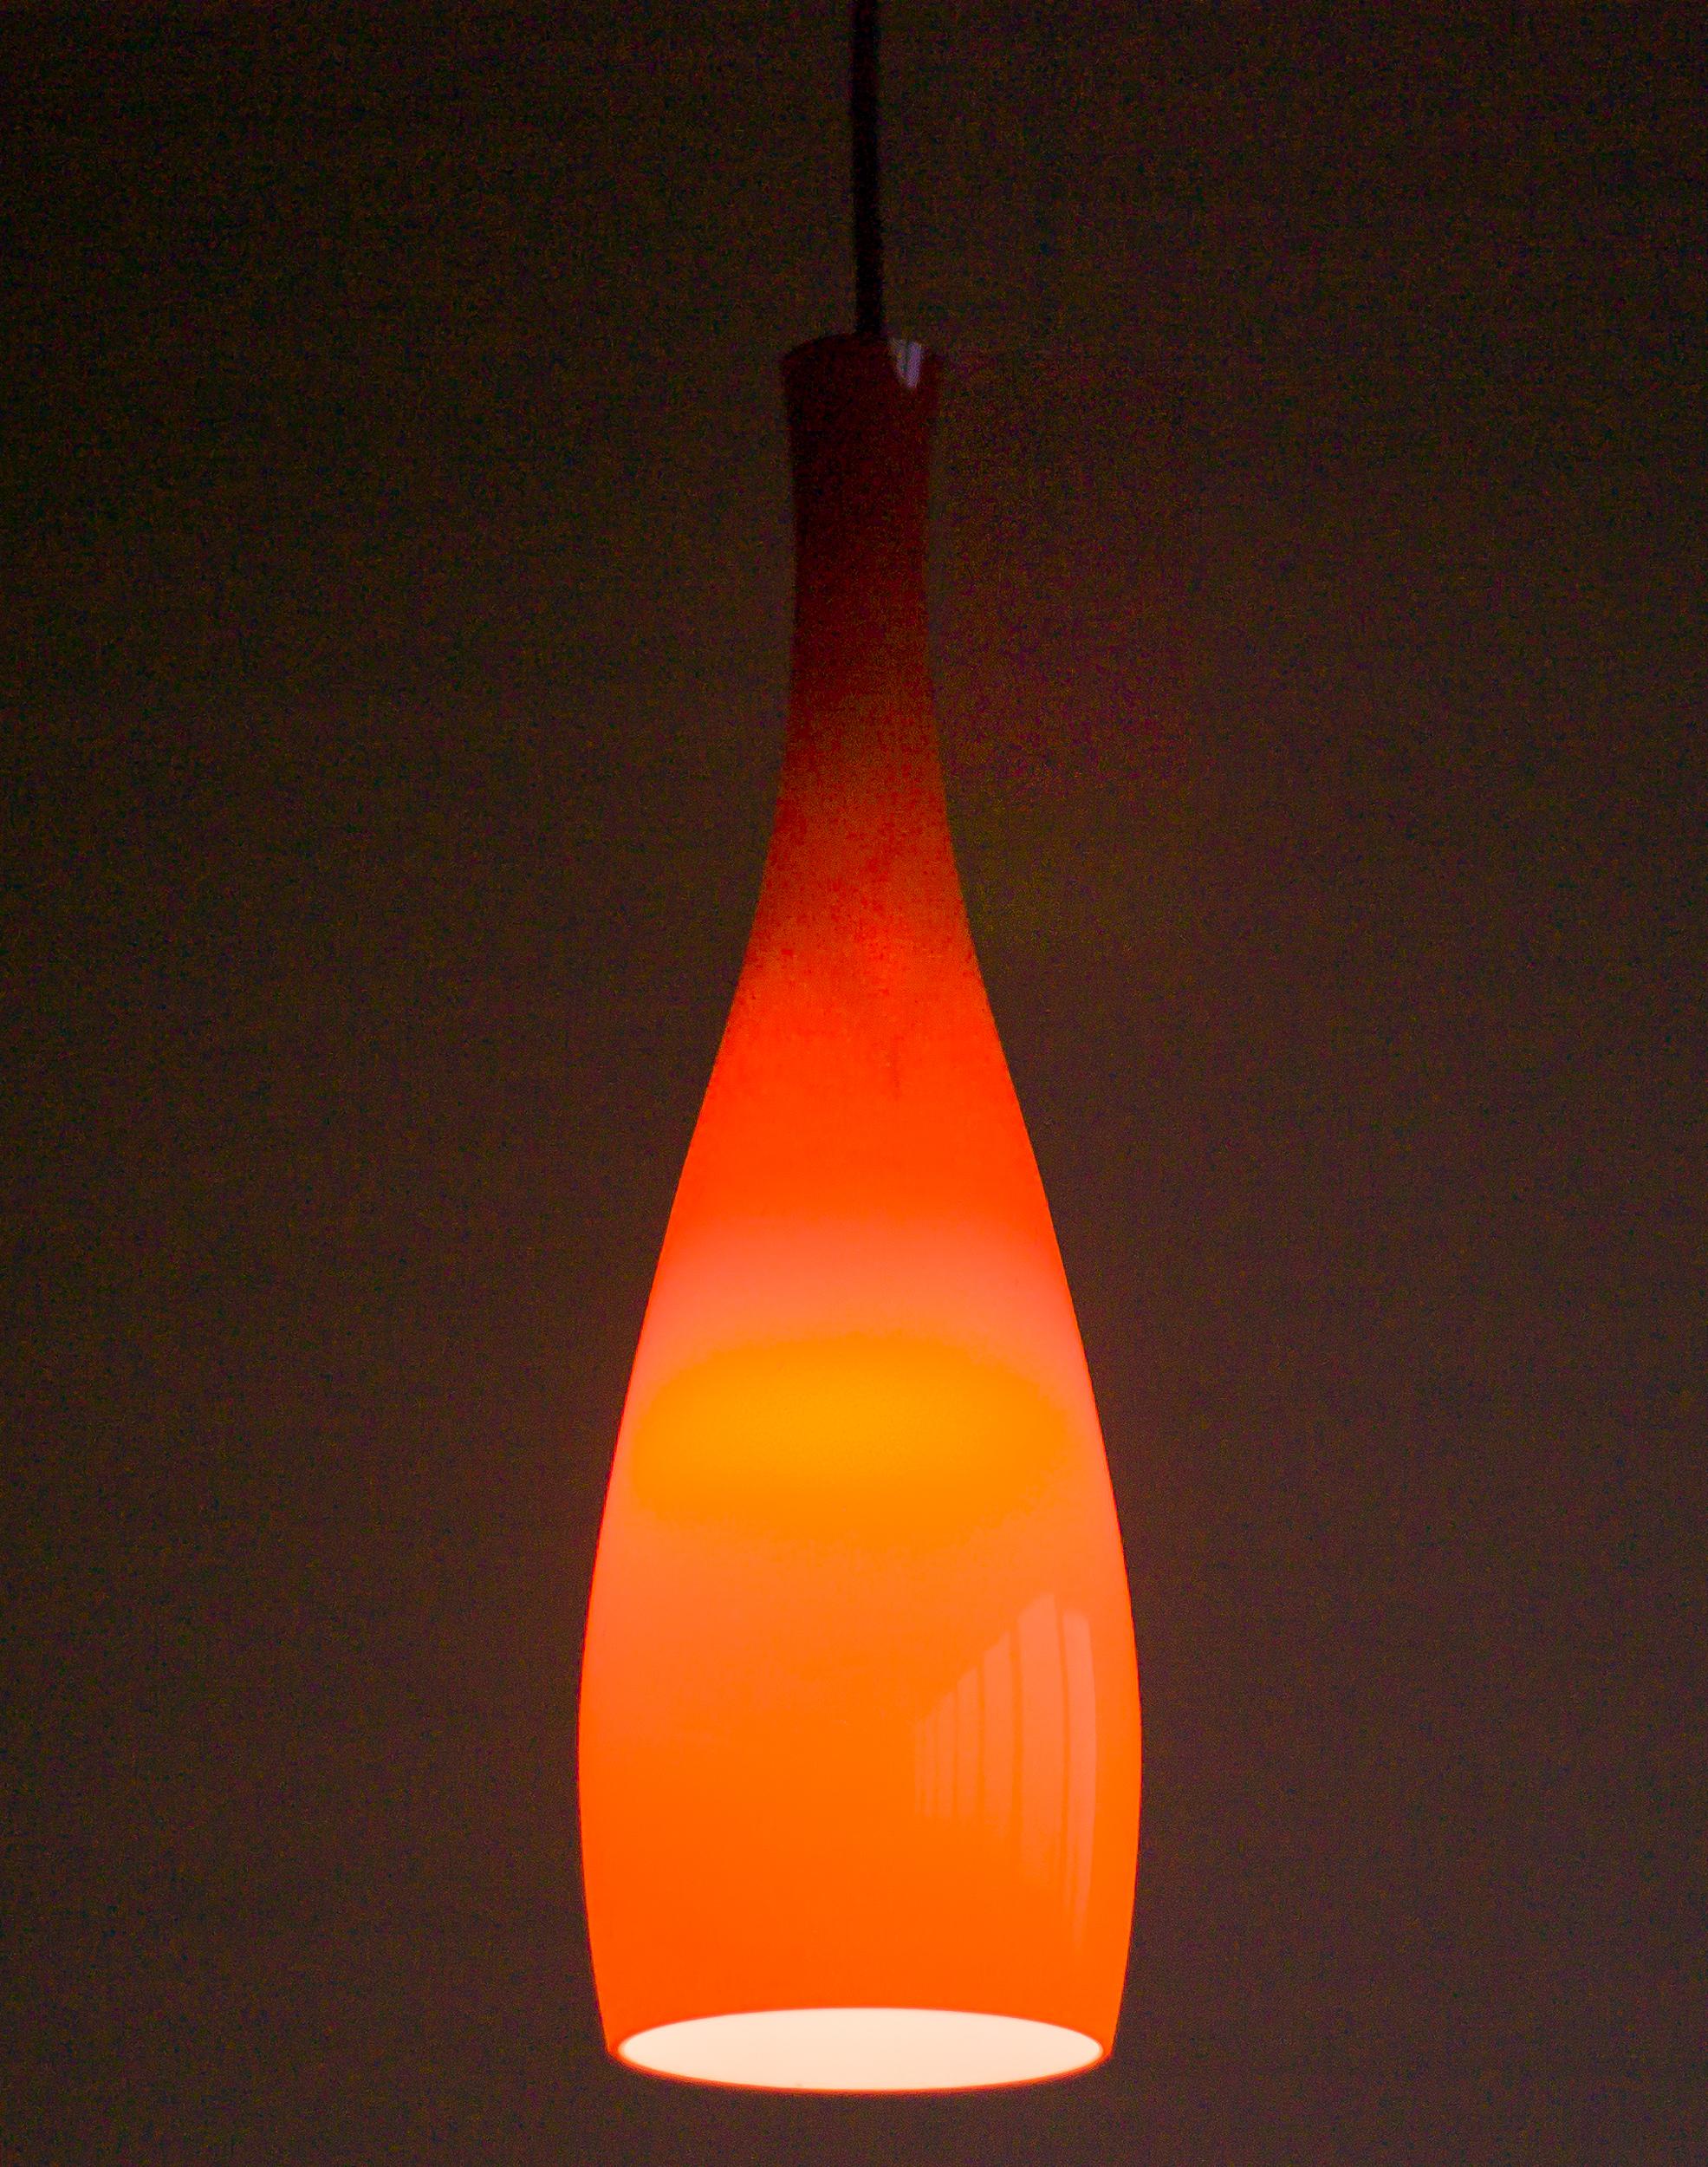 Grande suspension en verre opalin de couleur corail conçue en 1963 par Jacob E. Bang pour Fog & Mørup, Danemark.

Jacob Bang était un concepteur de verre danois connu pour ses designs innovants et de grande qualité. 
Il était l'une des figures de